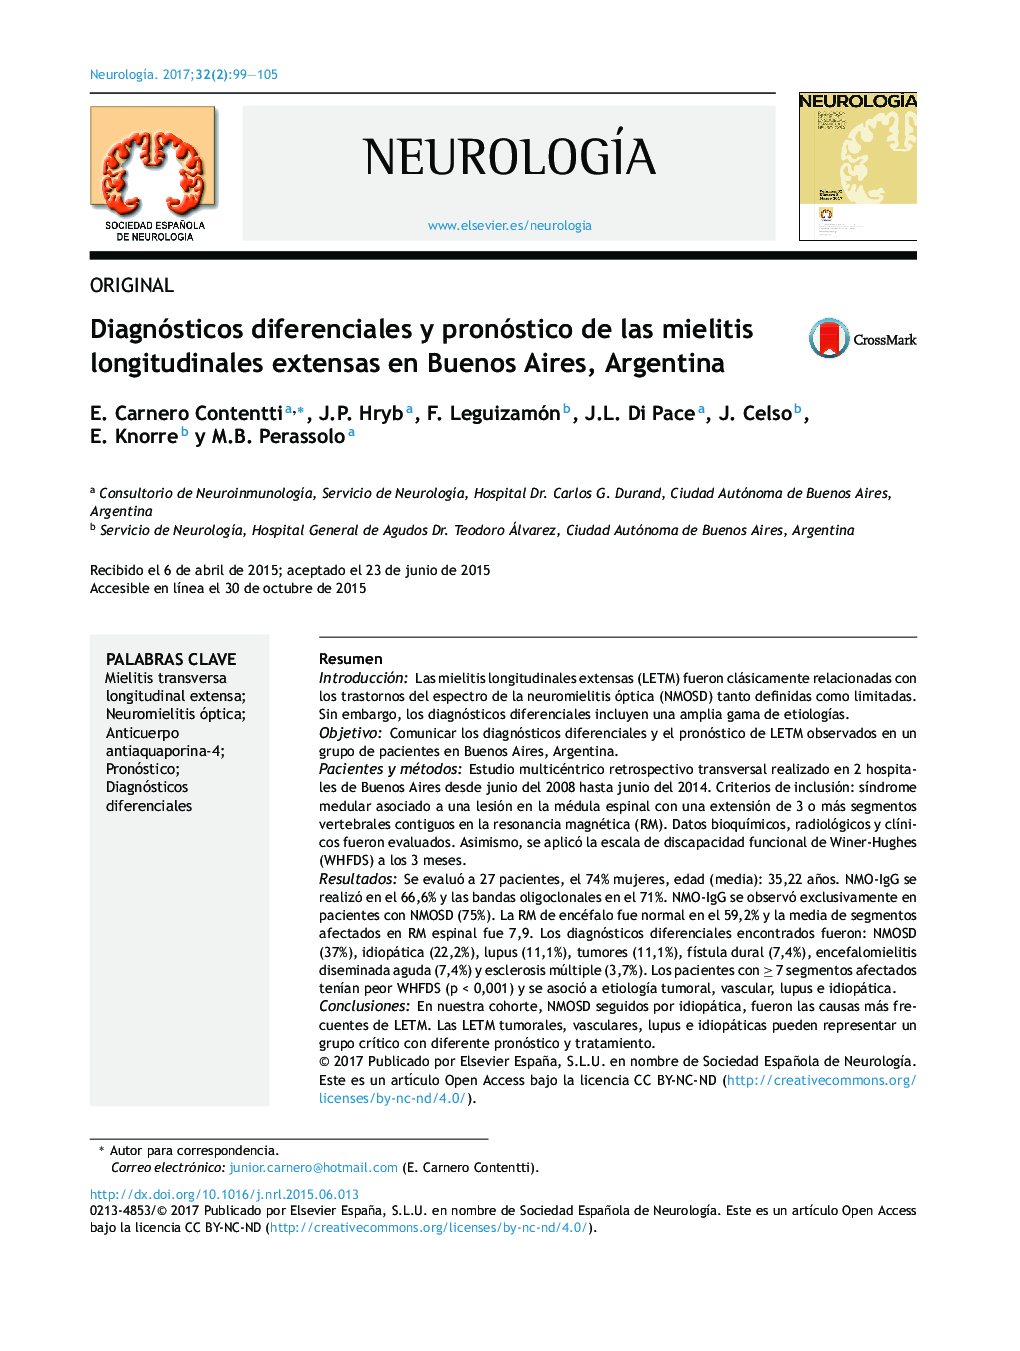 ORIGINALDiagnósticos diferenciales y pronóstico de las mielitis longitudinales extensas en Buenos Aires, ArgentinaDifferential diagnosis and prognosis for longitudinally extensive myelitis in Buenos Aires, Argentina